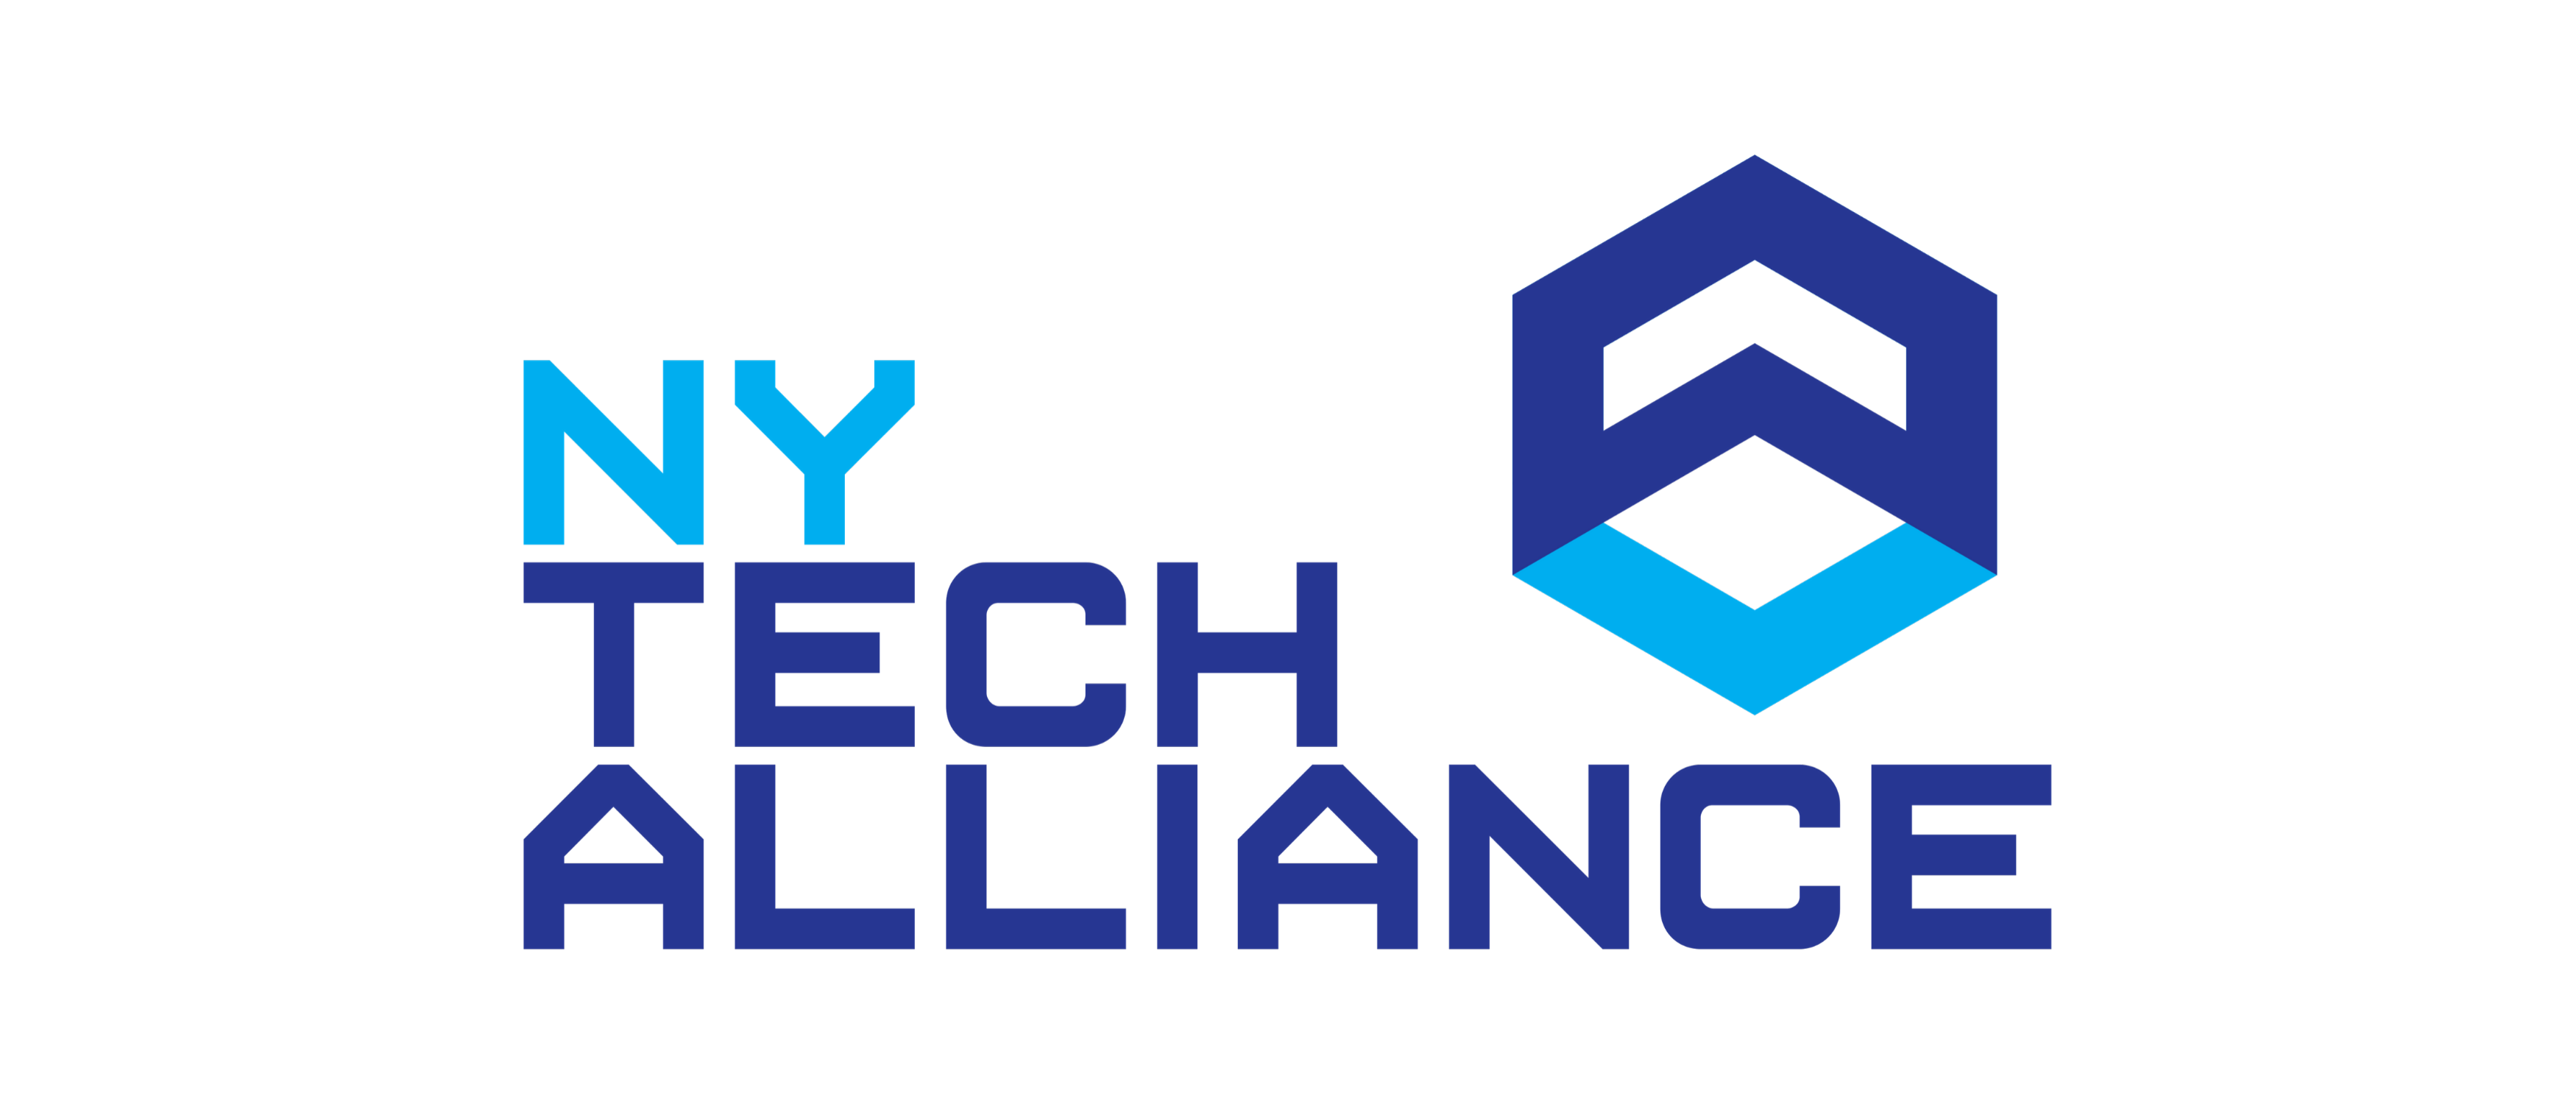 NY Tech Alliance